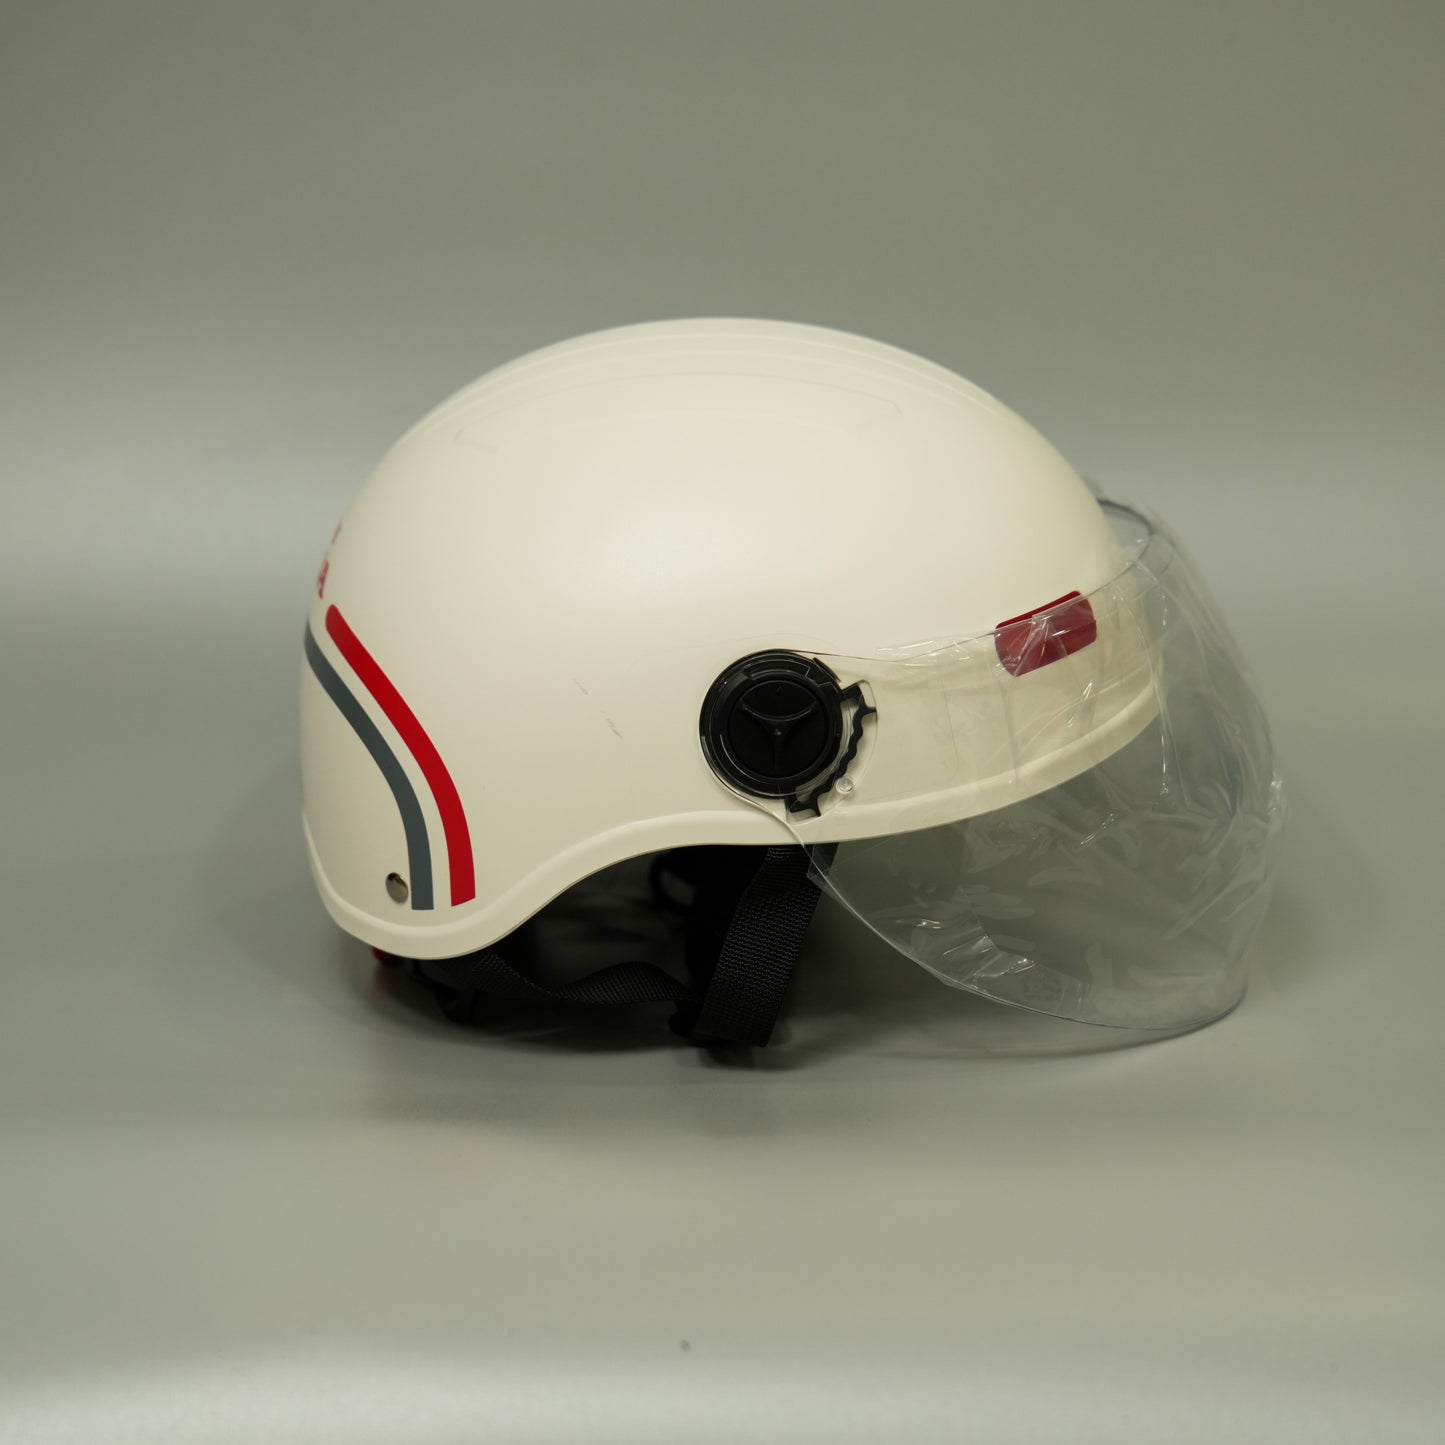 Sundiro Honda Helmet